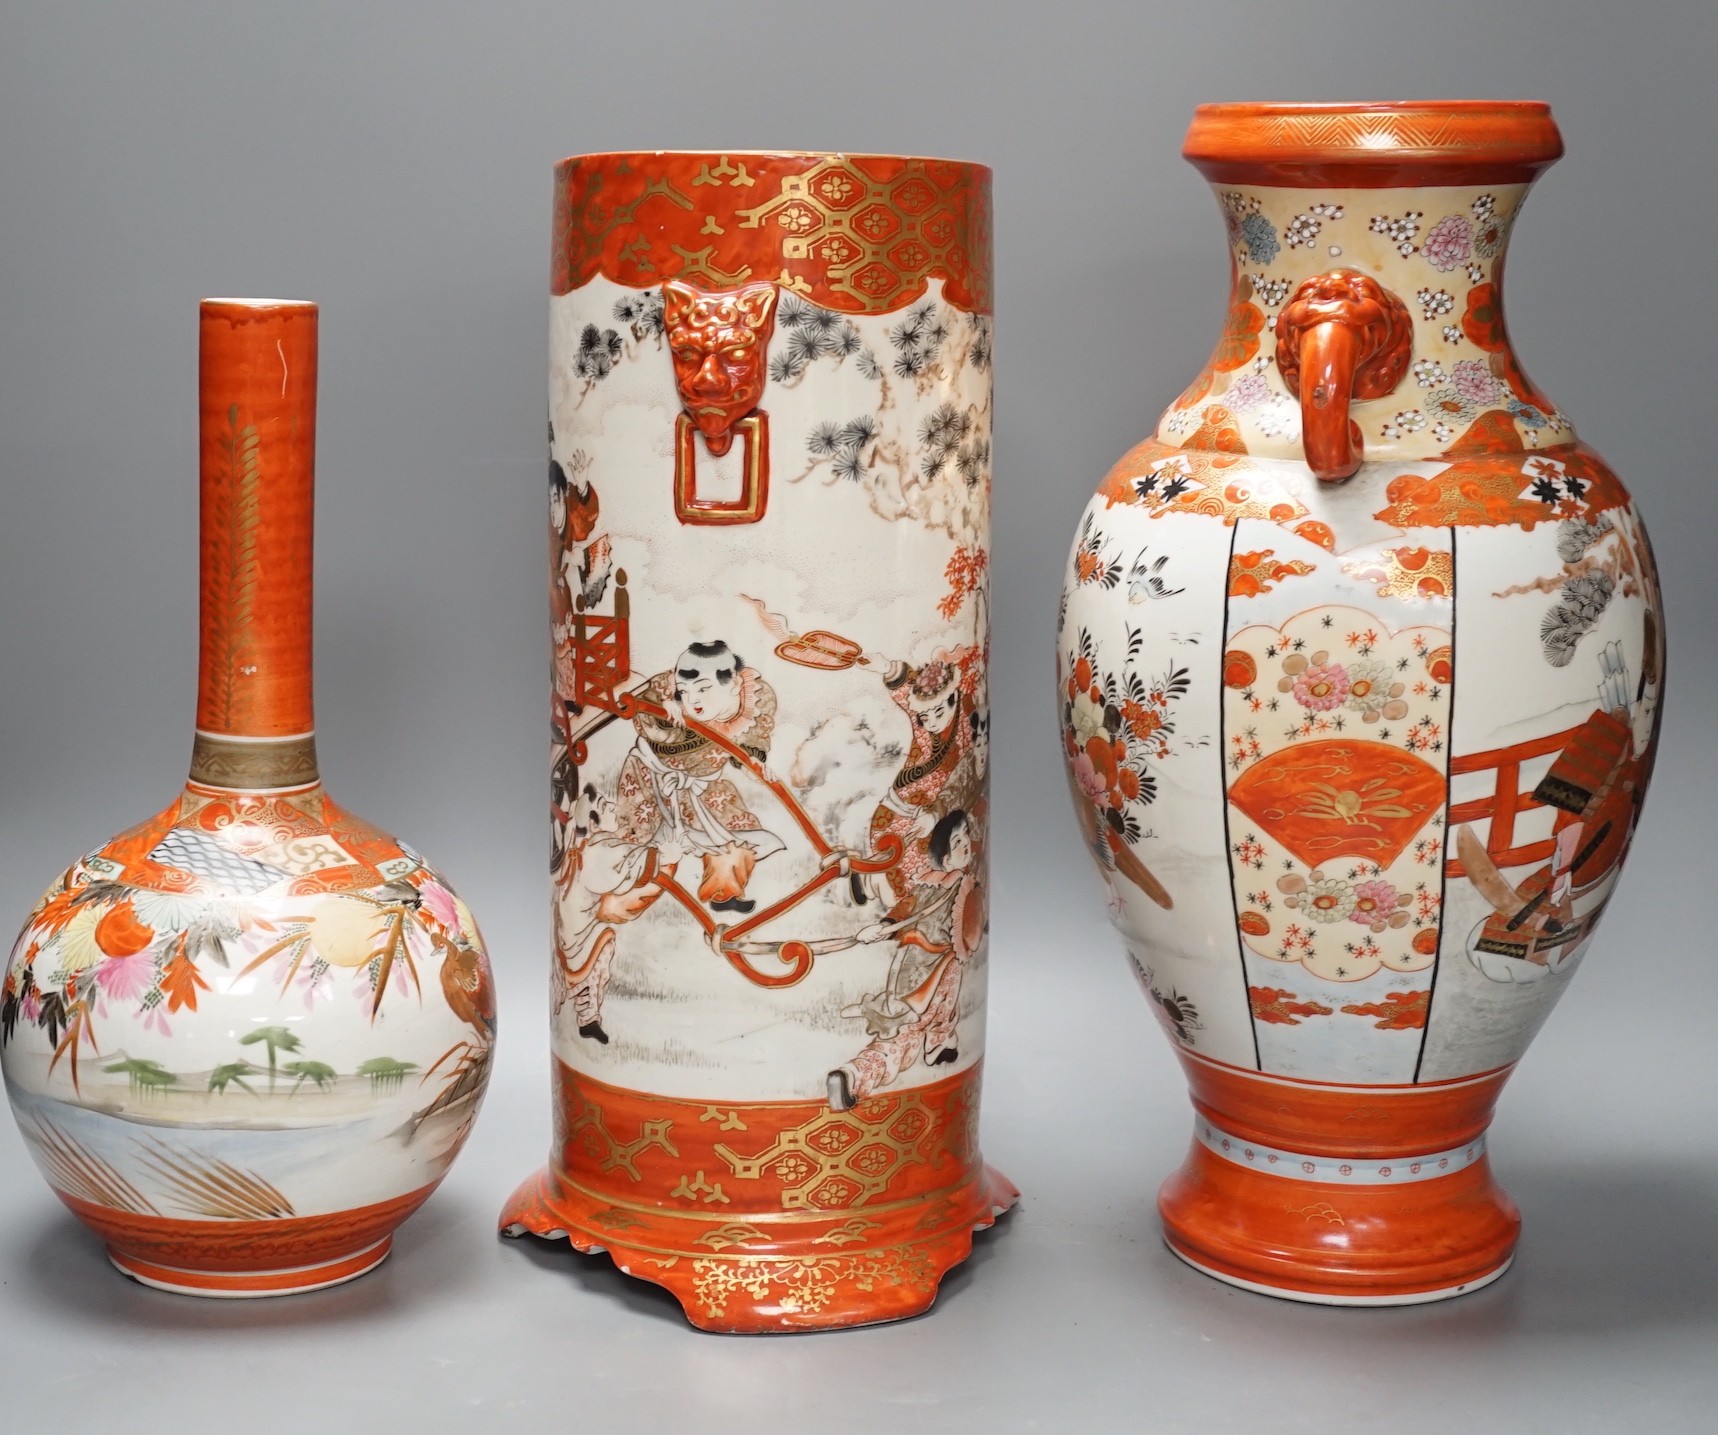 A large Japanese Kutani sleeve vase, bottle vase and another, sleeve vase 34.5 cms high